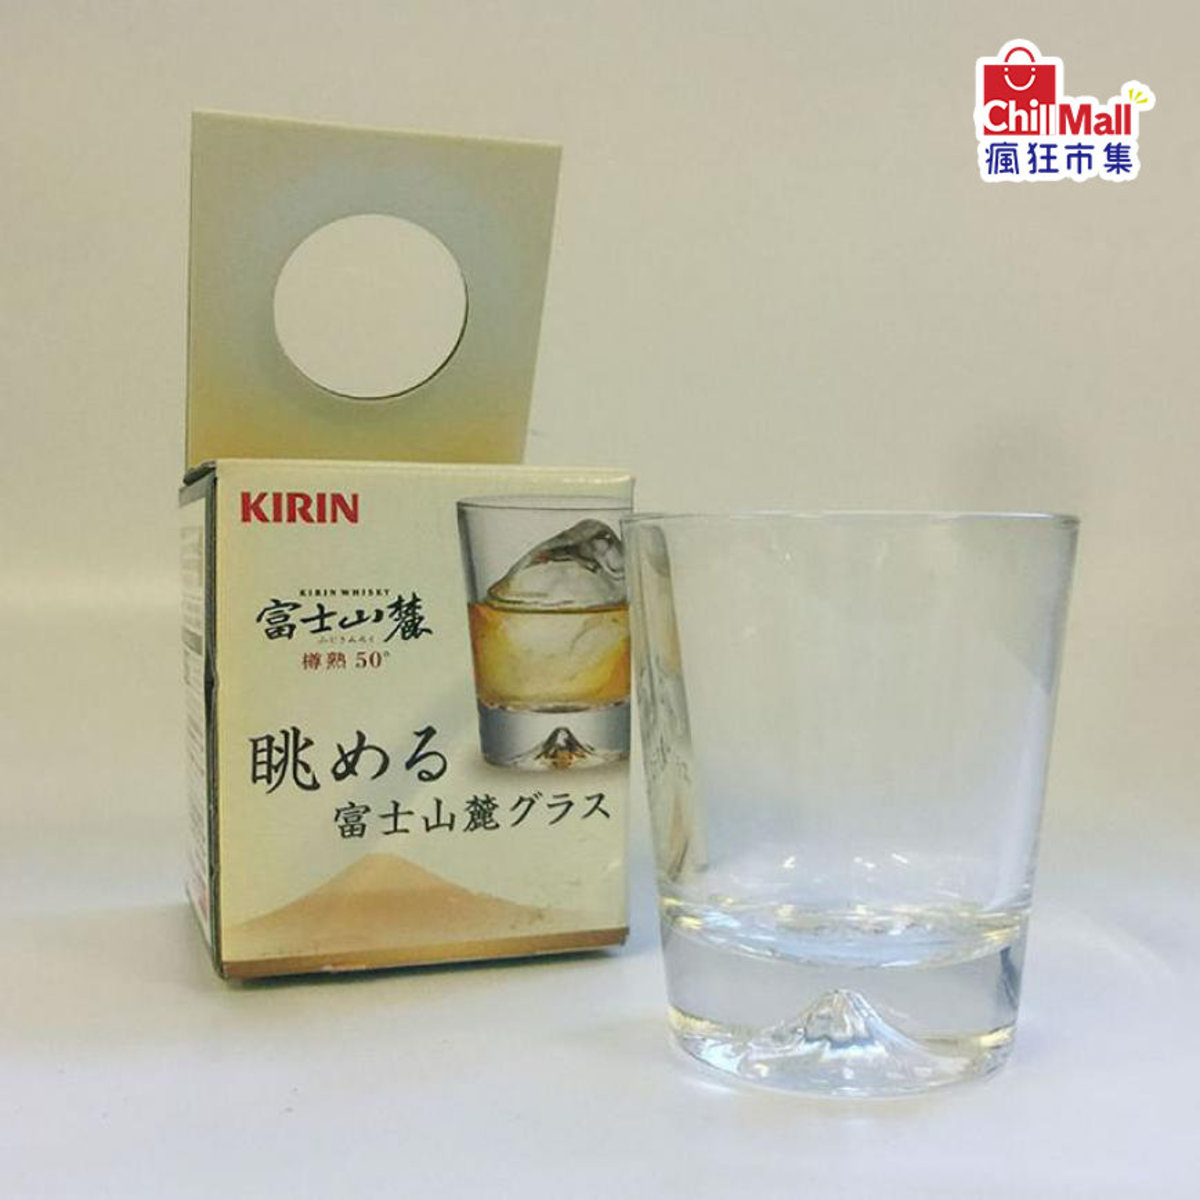 日本版Kirin富士山麓威士忌杯 原裝透明